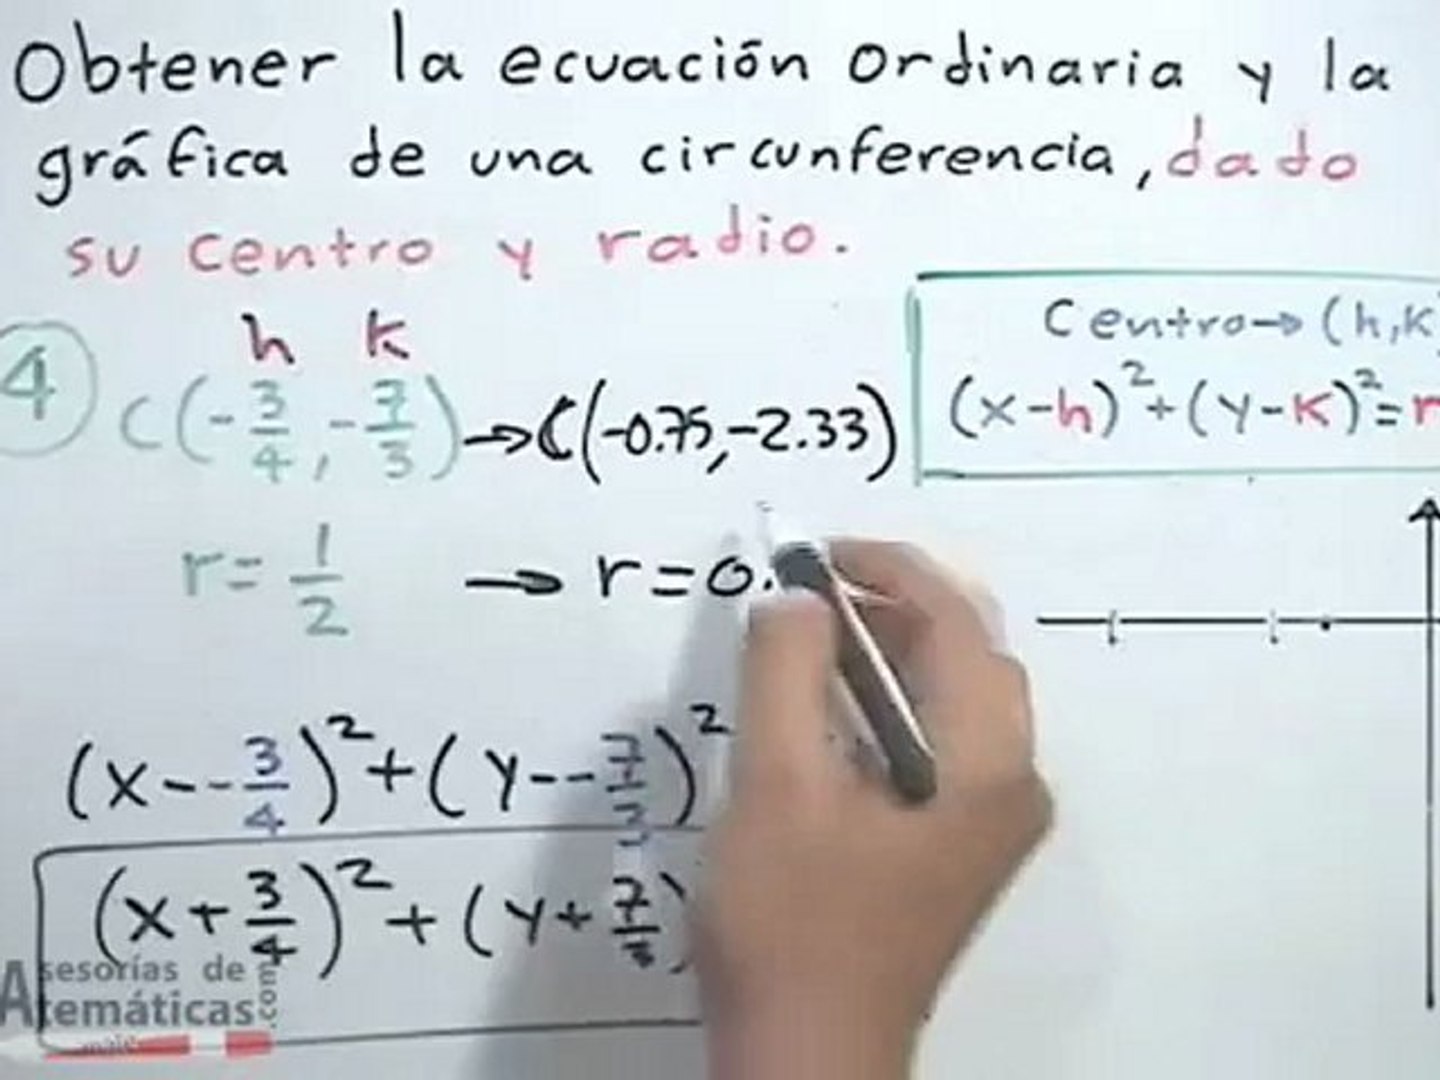 Obtener la ecuación ordinaria de una circunferencia dado su centro y radio  - Vídeo Dailymotion